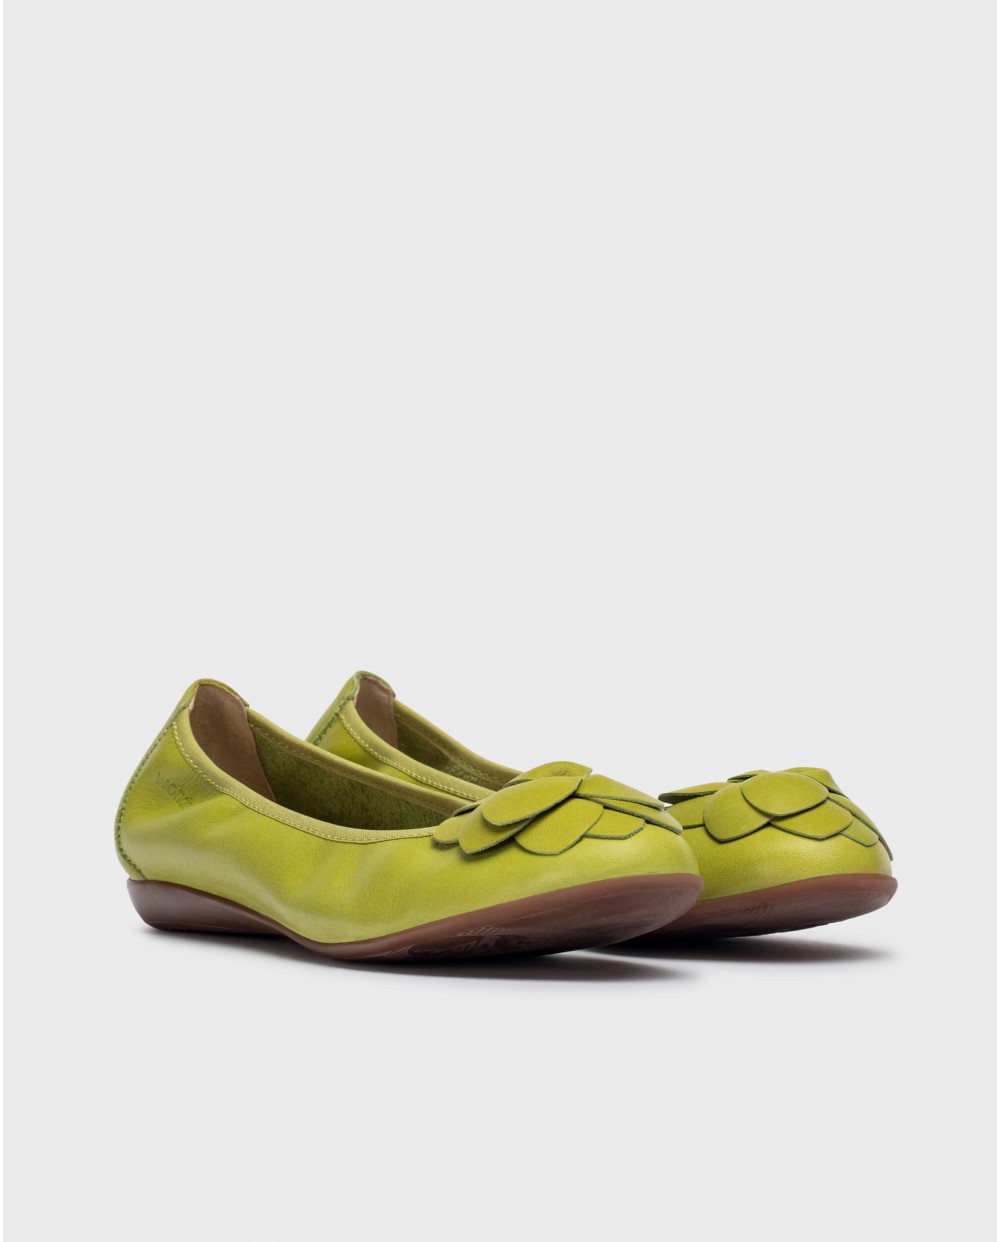 Wonders-Flat Shoes-Green Praga ballet flat